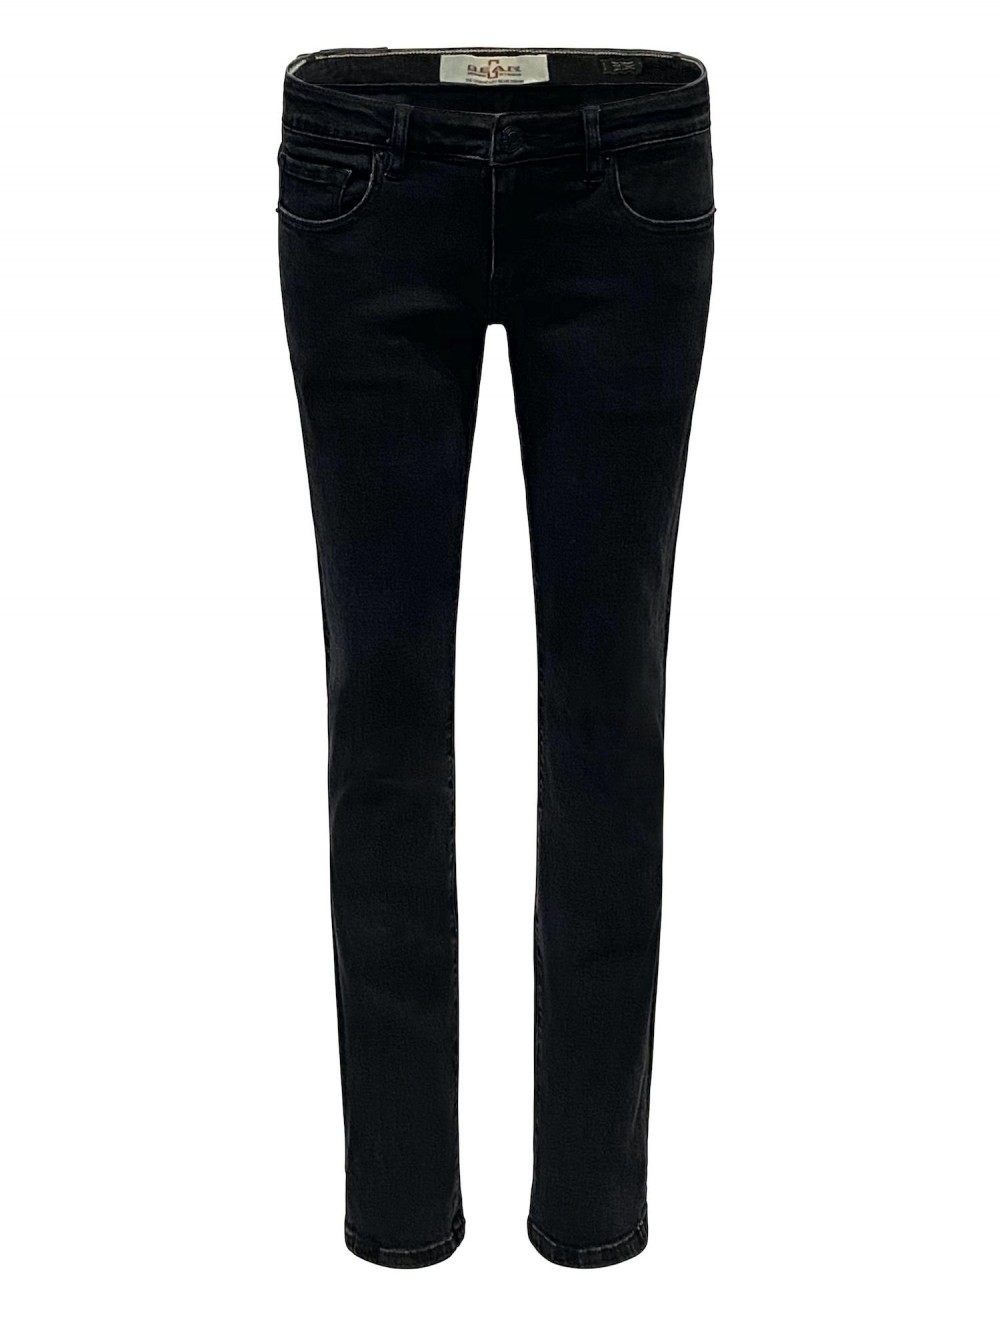 Jeans JSM302 stretch straight fit - black